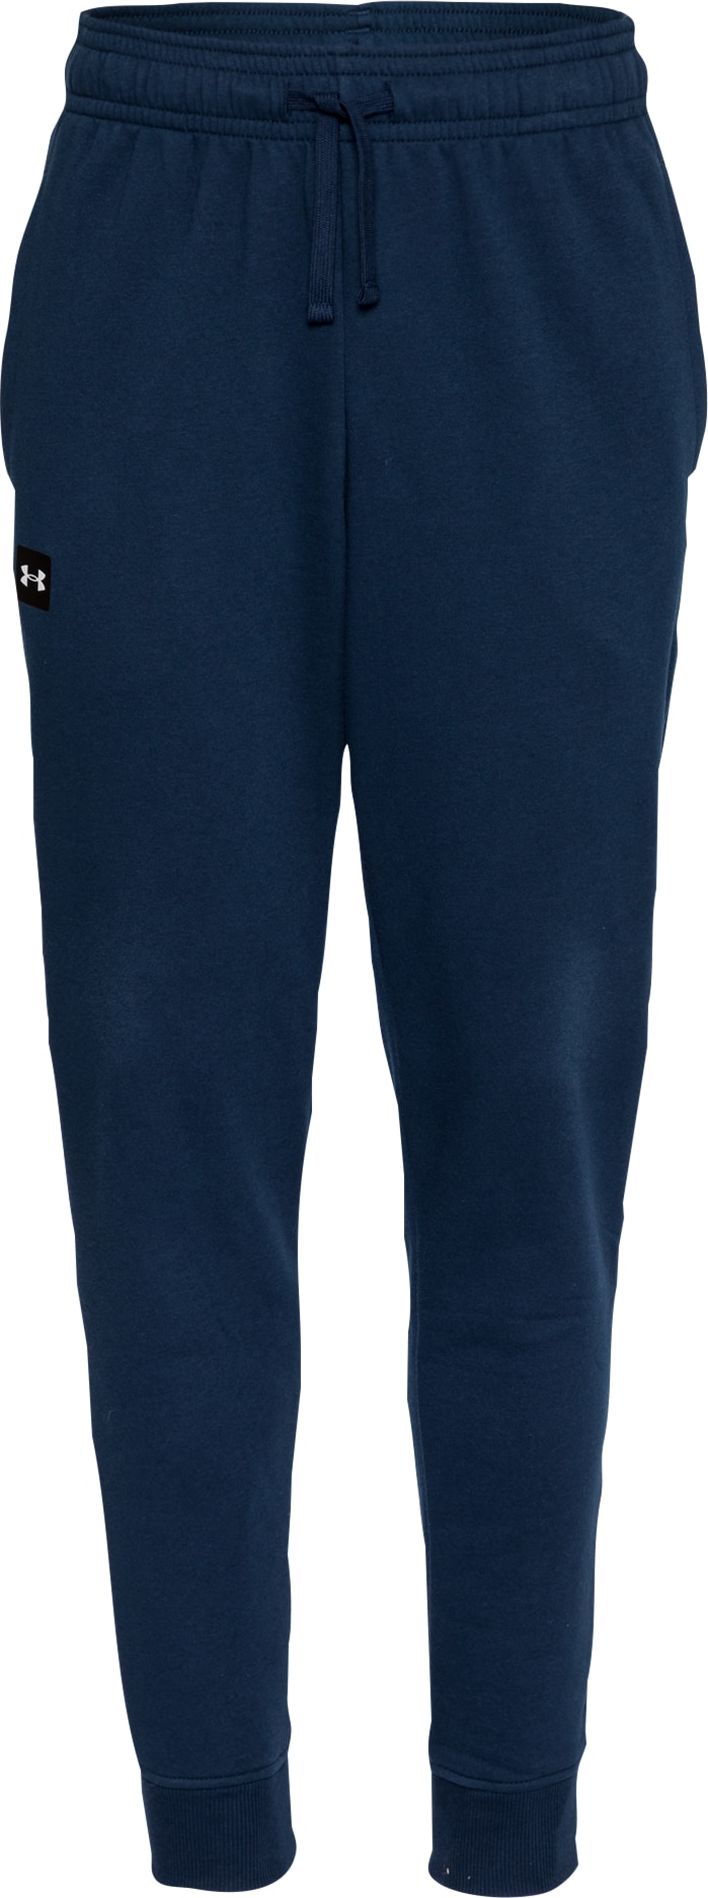 UNDER ARMOUR Sportovní kalhoty 'Rival' námořnická modř / černá / bílá